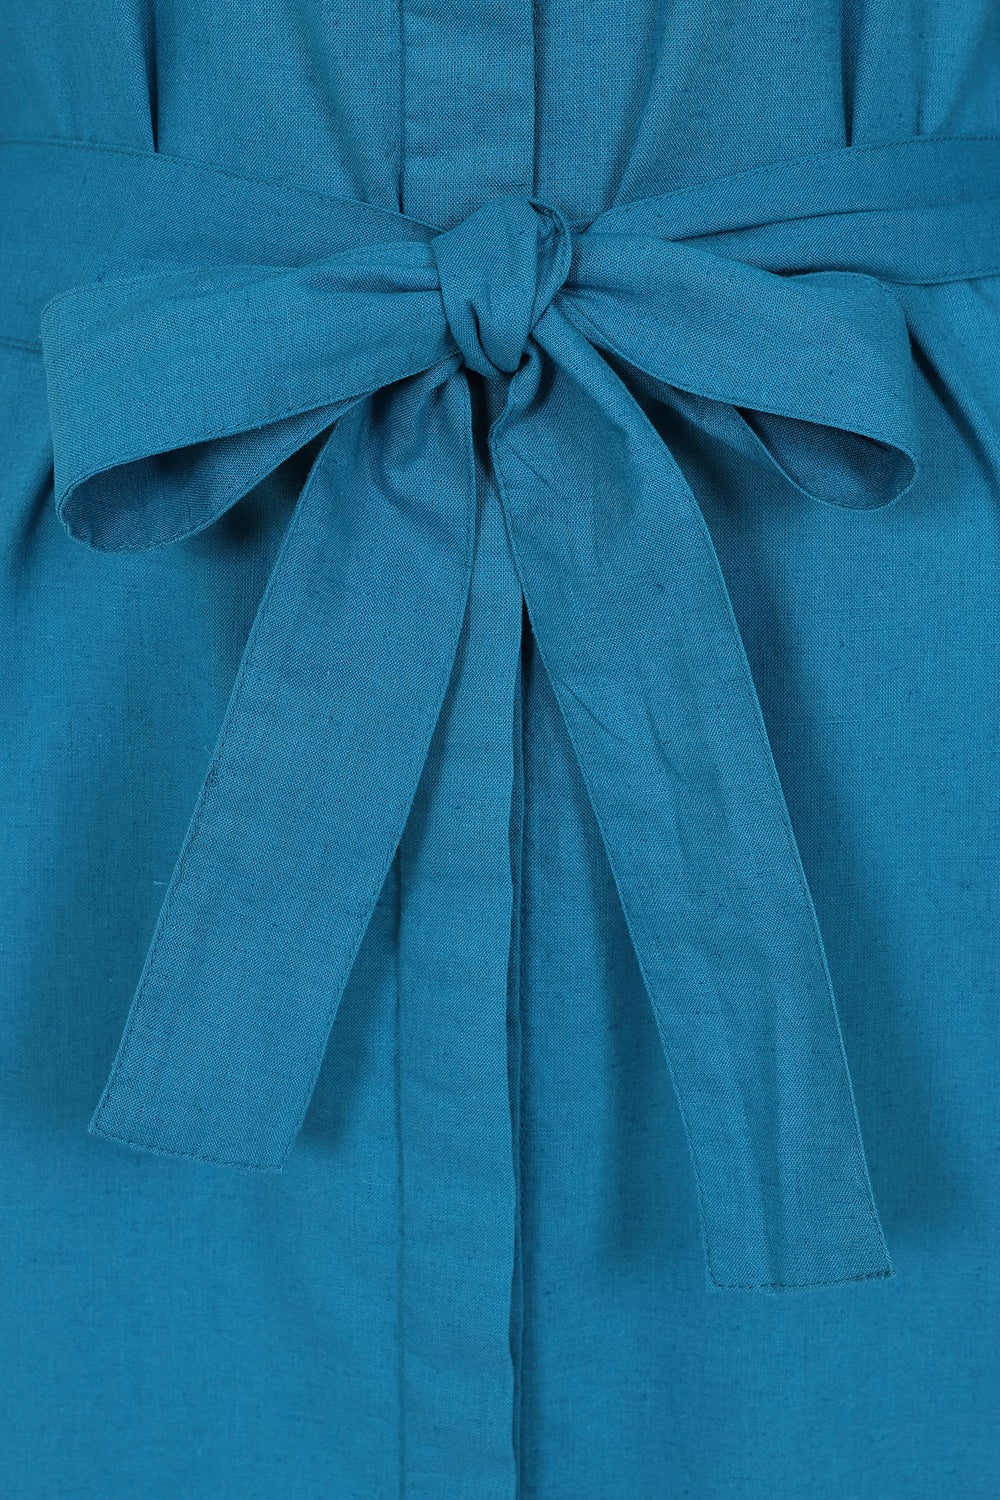 Hudson Dress - Teal - Organic Cotton Linen Blend